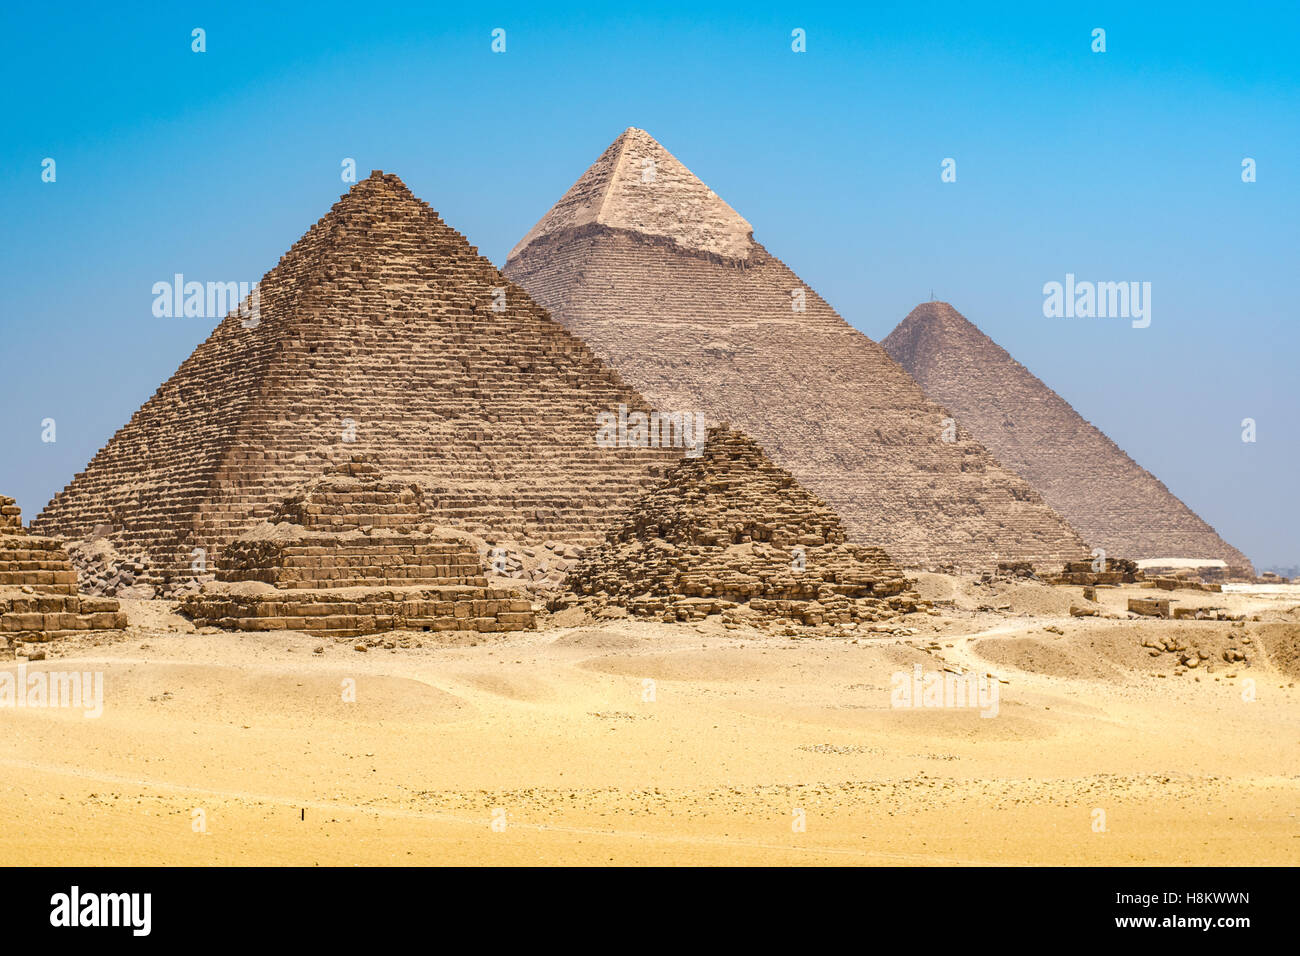 Il Cairo, Egitto le tre grandi piramidi di Giza contro un cielo blu chiaro. Da sinistra a destra sorge la piramide di Mekaure (smalle Foto Stock